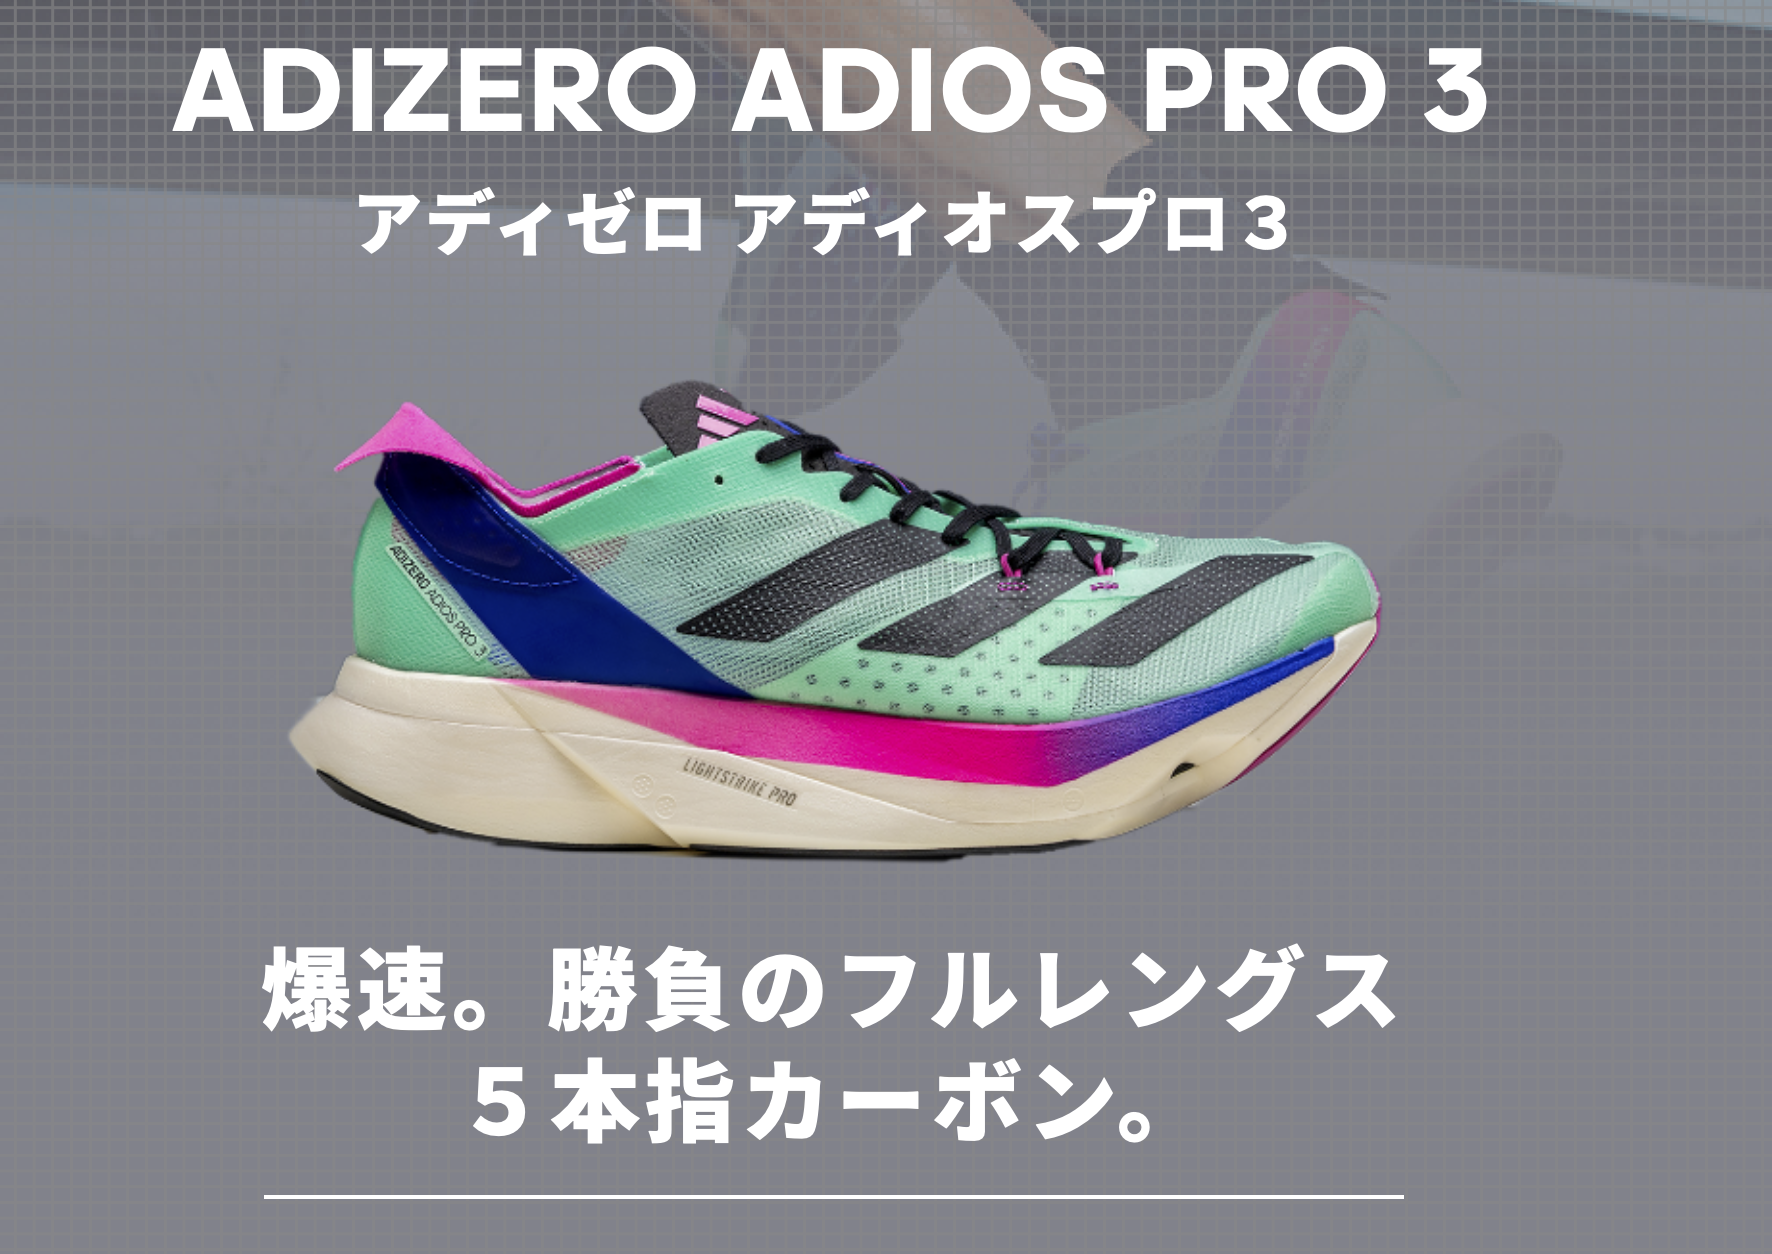 アディゼロ アディオスプロ3 ADIZERO ADIOS PRO3 26.5cm - ランニング